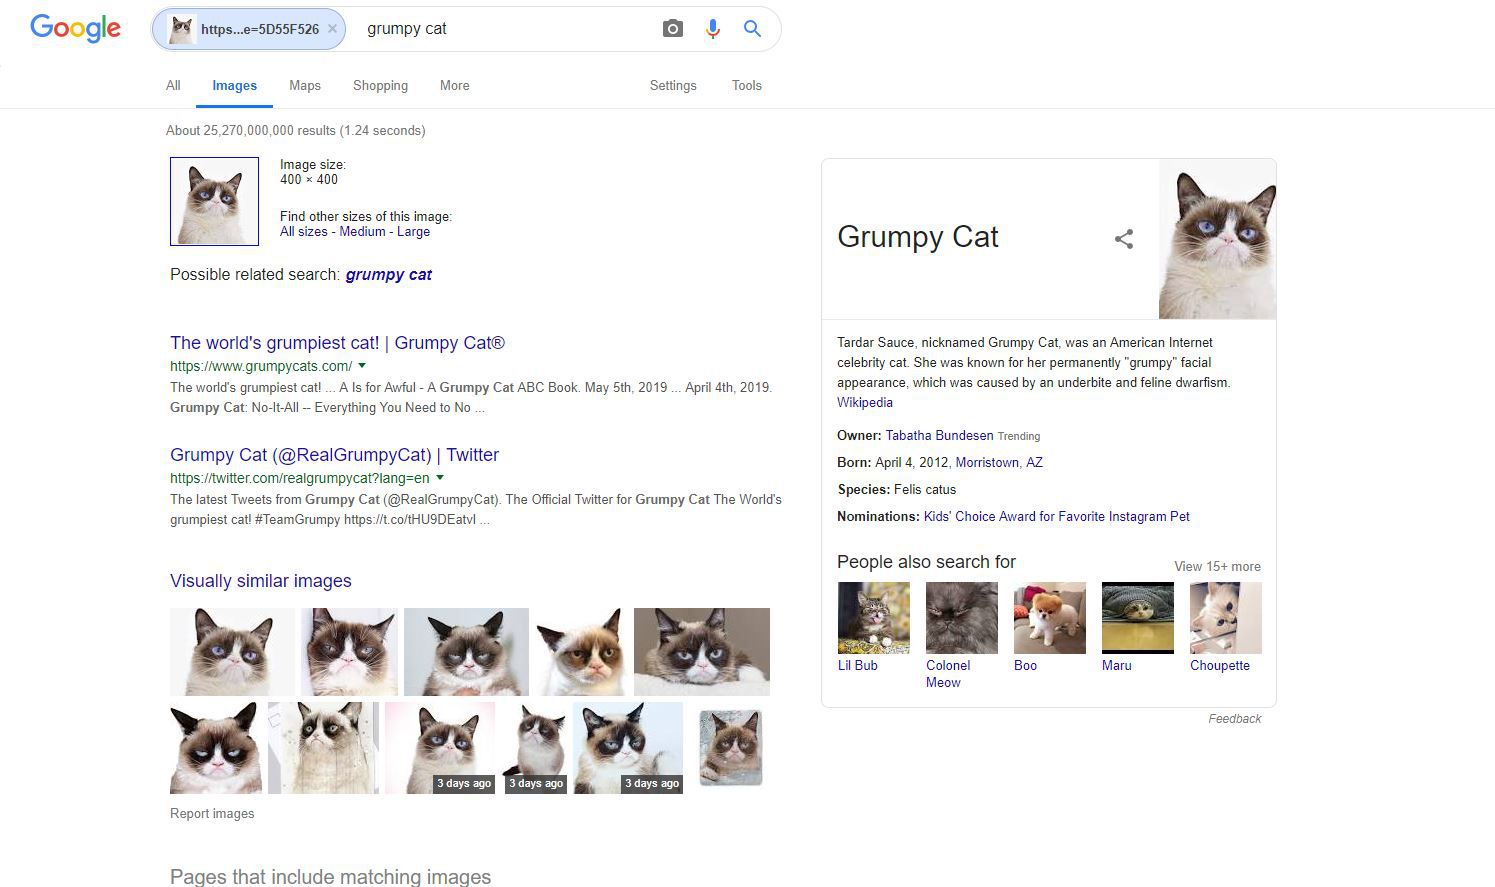 Captura de tela dos resultados de imagens reversas do Google